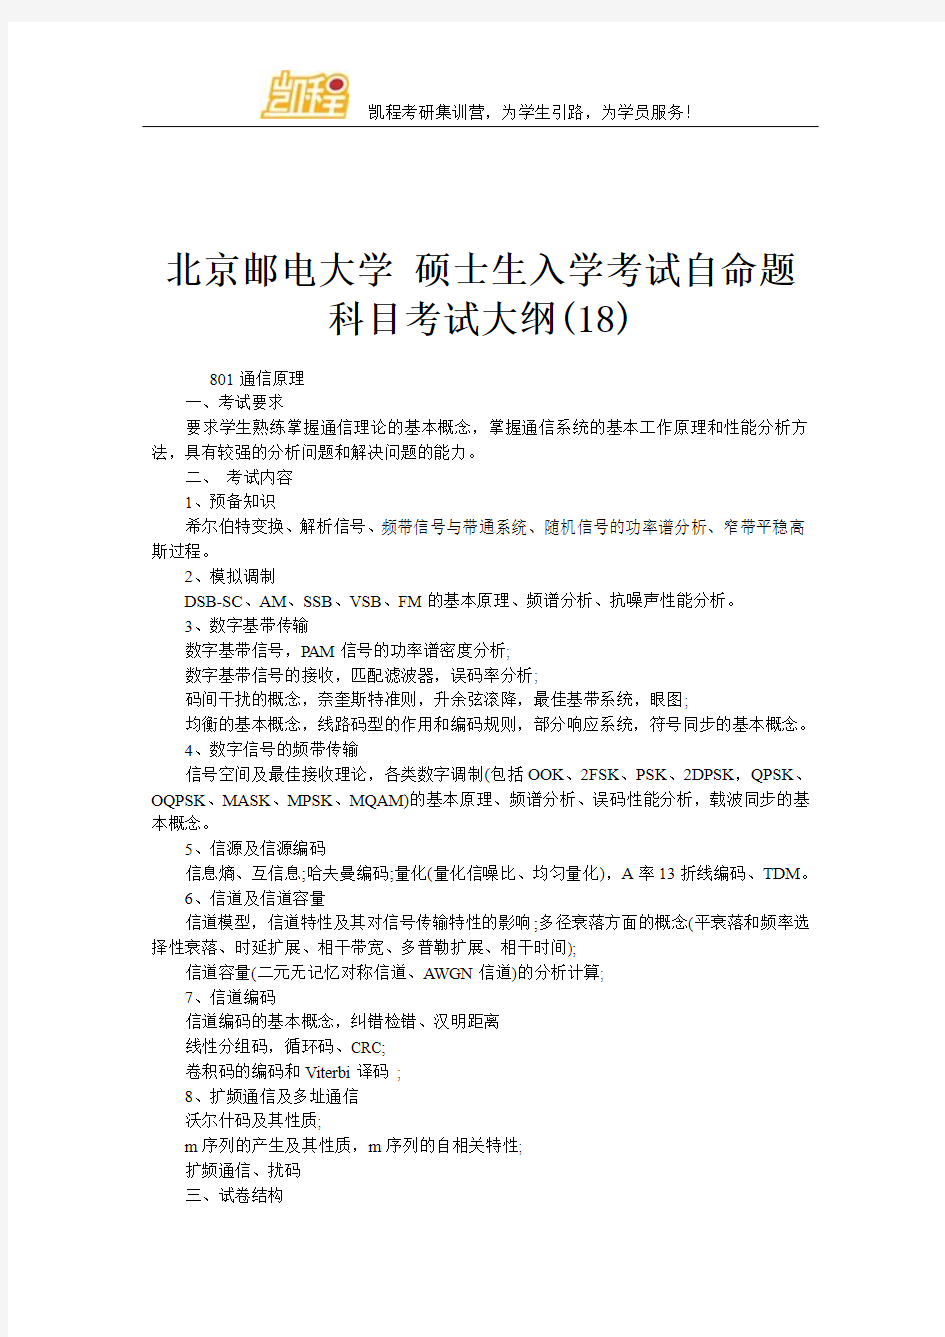 北京邮电大学 硕士生入学考试自命题科目考试大纲(18)